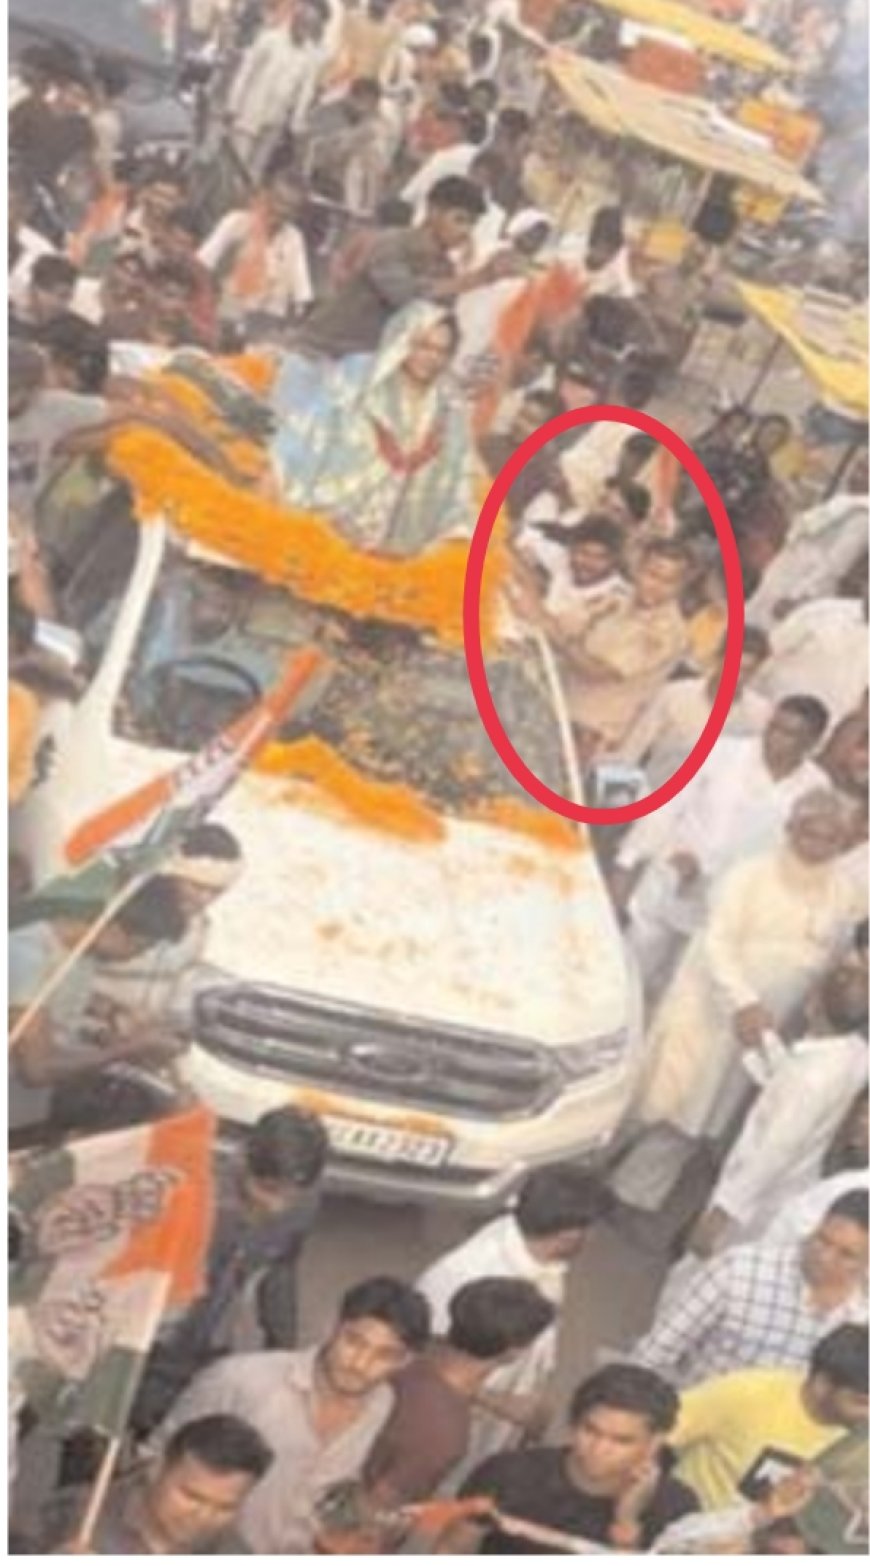 नामाकंन पत्र दाखिल करने के दौरान जाहिदा खान के साथ वर्दी में पीएसओ का फोटो आया सामने